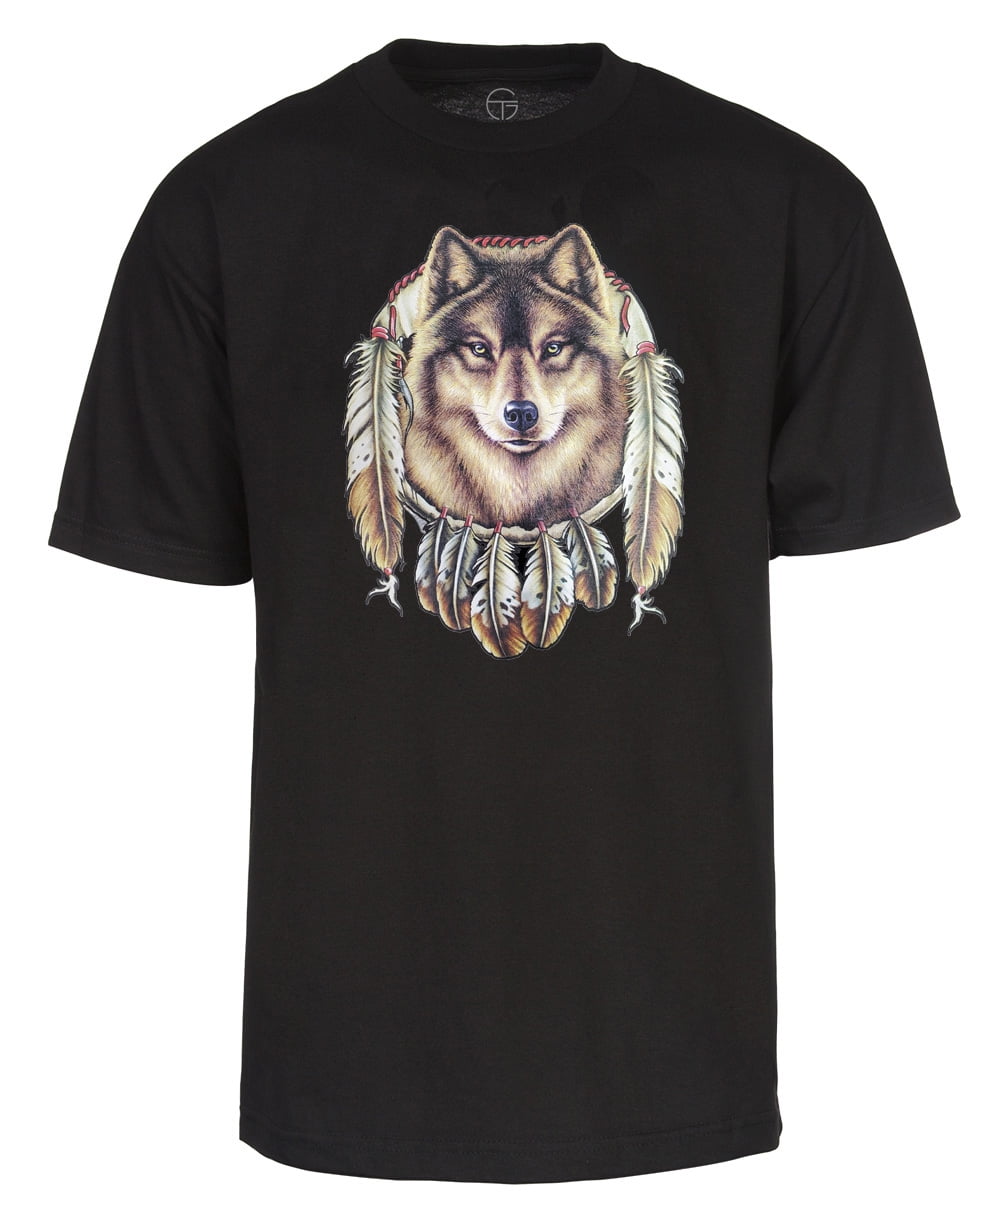 Dream Catcher Wolf T Shirt, Black, XL - Walmart.com